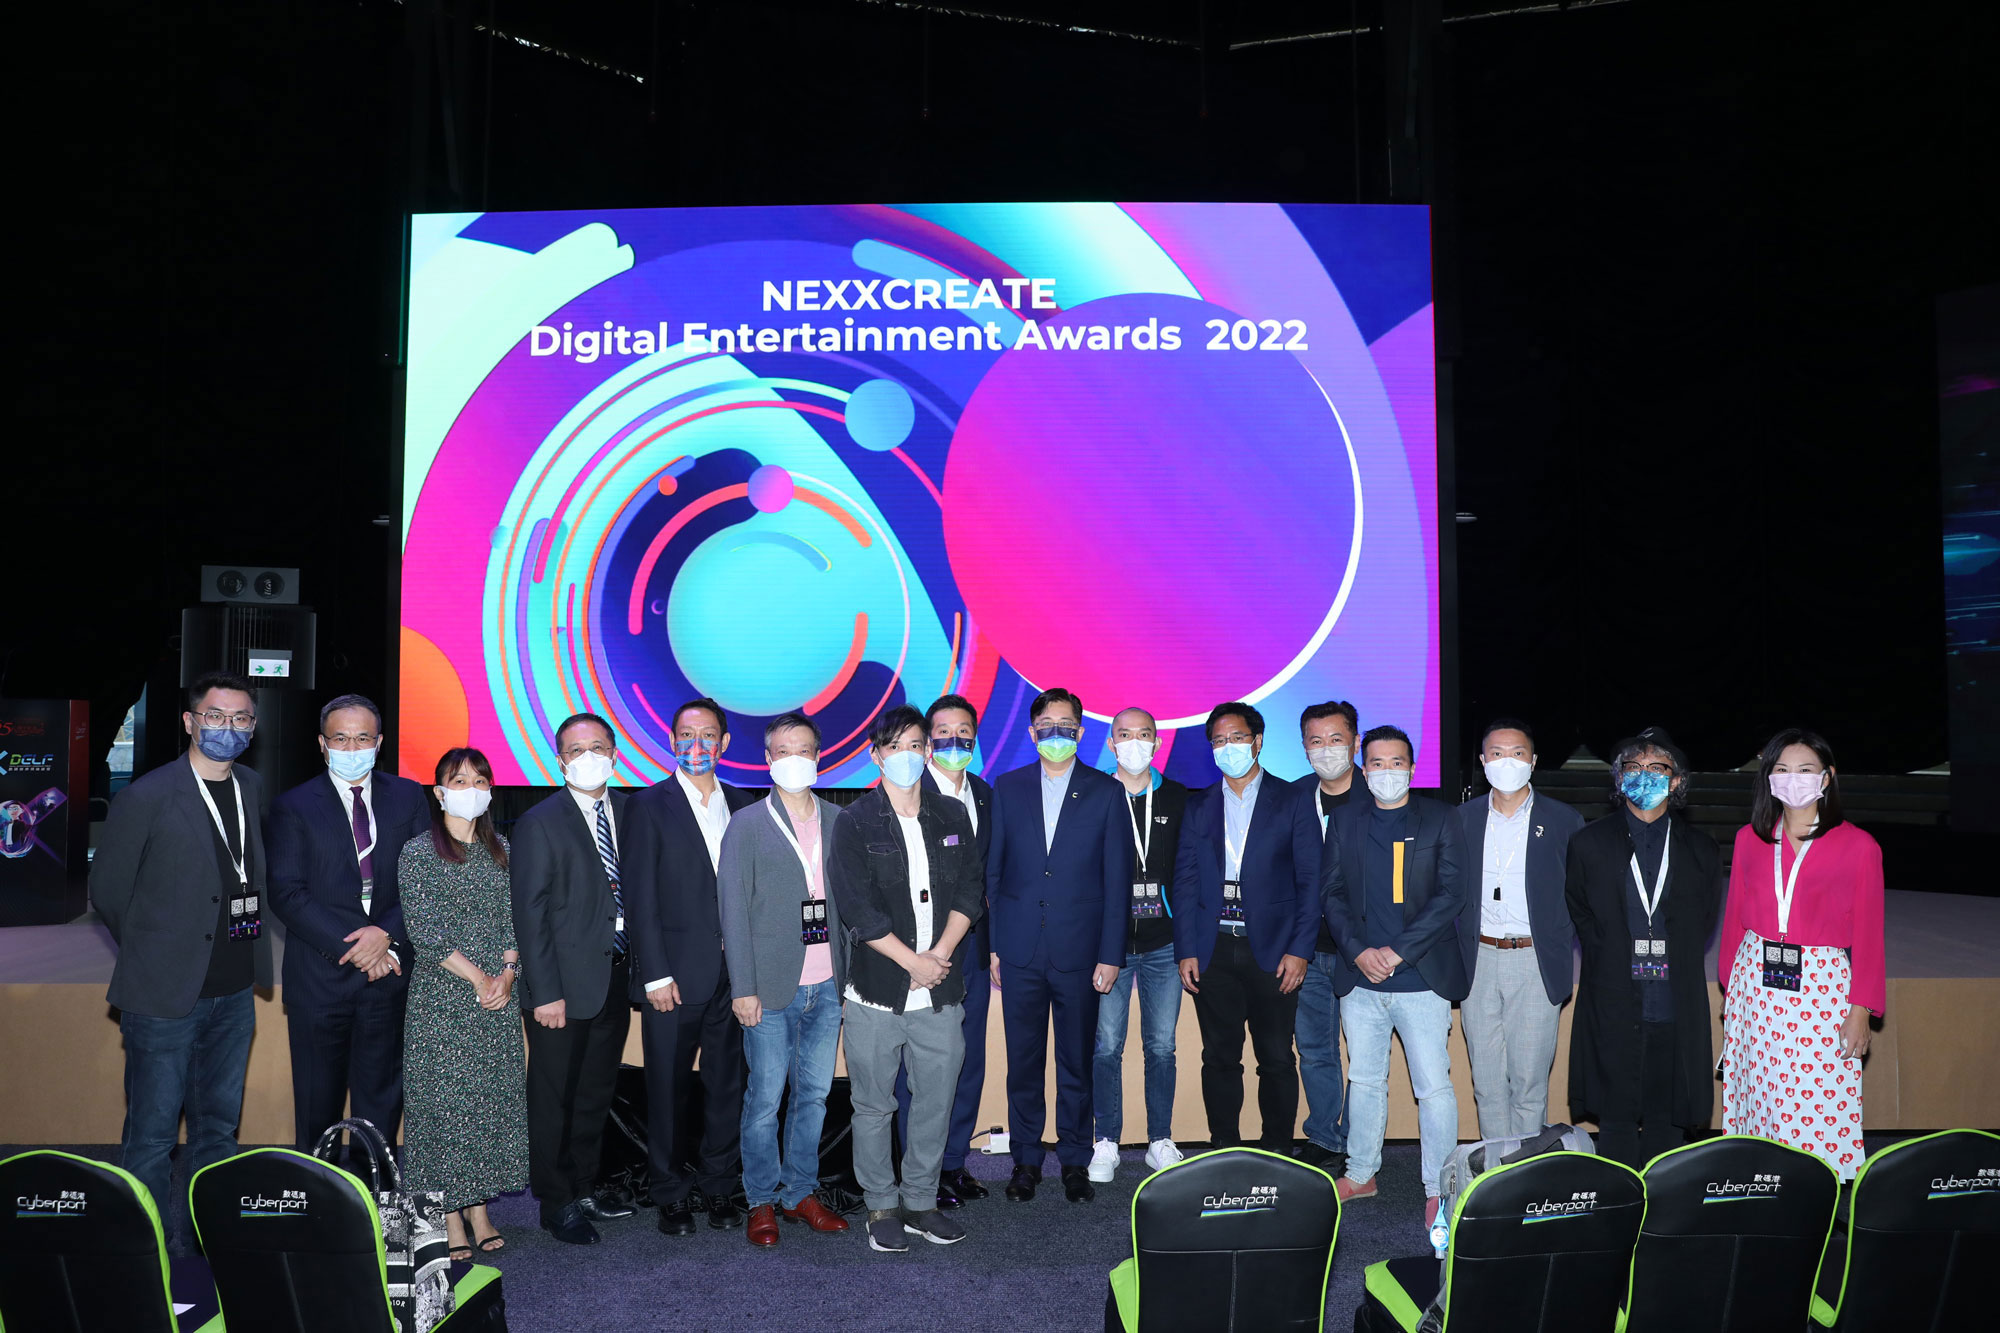 副政府资讯科技总监(署任)黄敬文先生（左四）及Network of EdTech Hong Kong (NEXX)主席严伟文先生（左七）于「NEXXCREATE 数码娱乐大奖2022颁奖典礼」与讲者及嘉宾合照